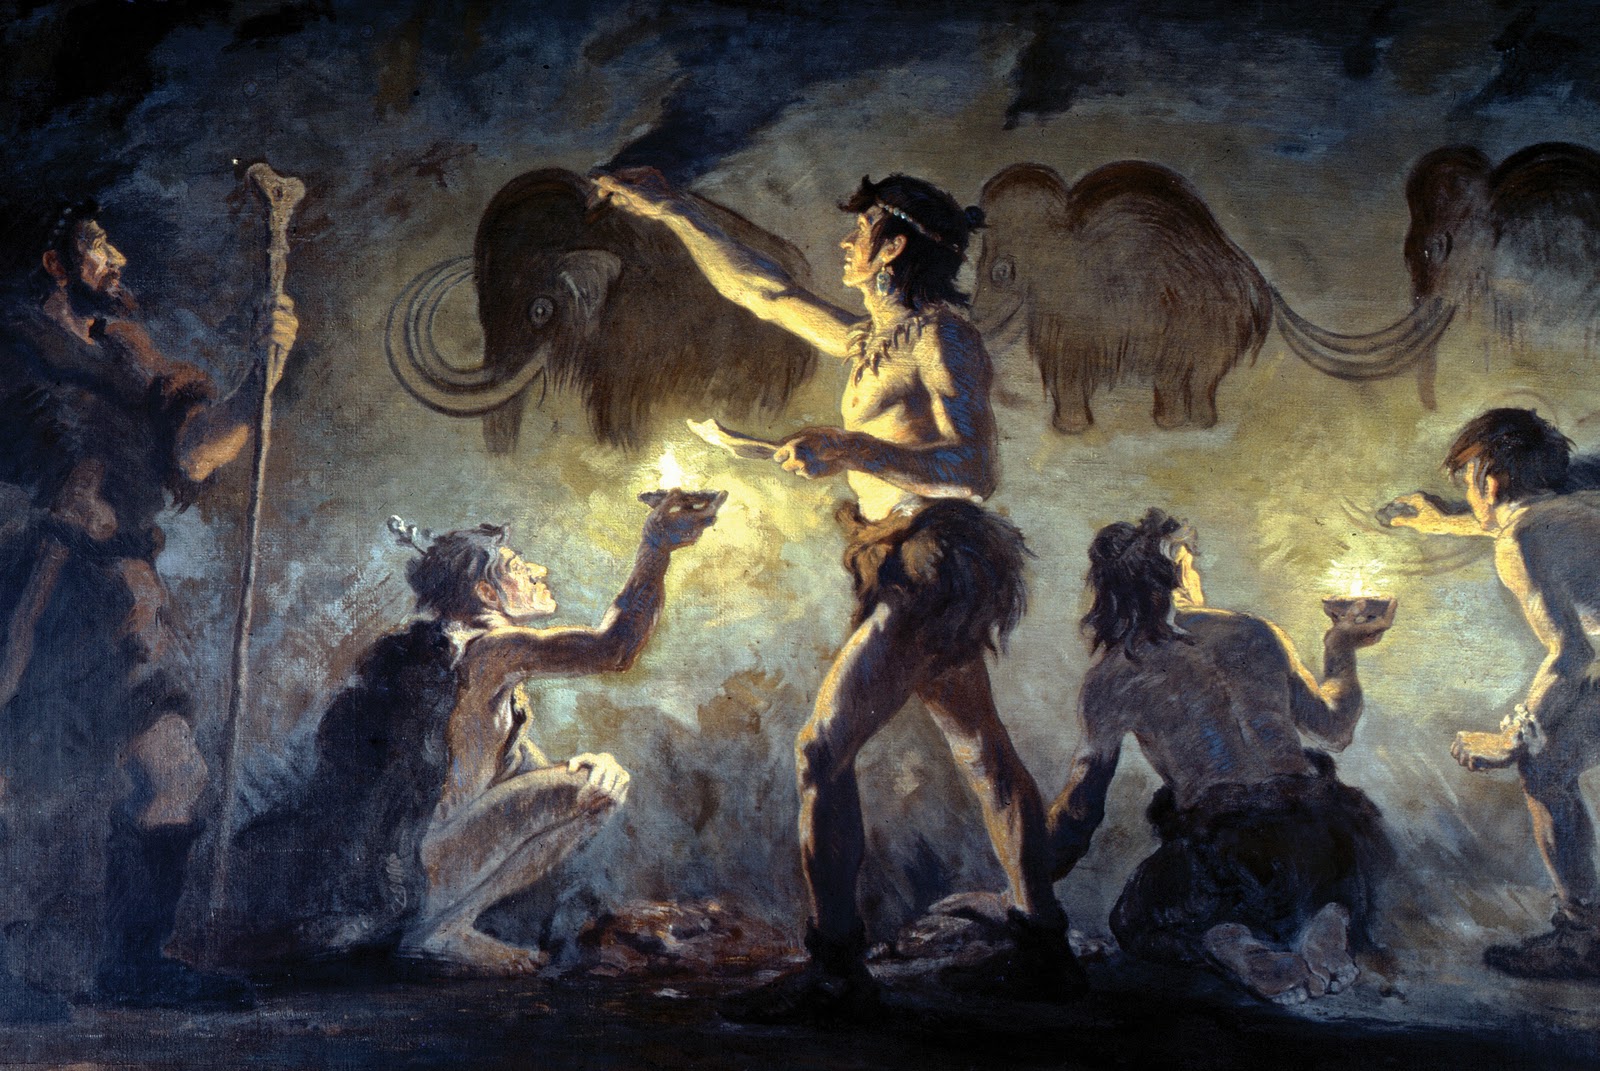 Représentation d'artistes de la préhistoire dans la grotte de Font-de-Gaume. © Charles Robert Knight, Wikimedia Commons, domaine public